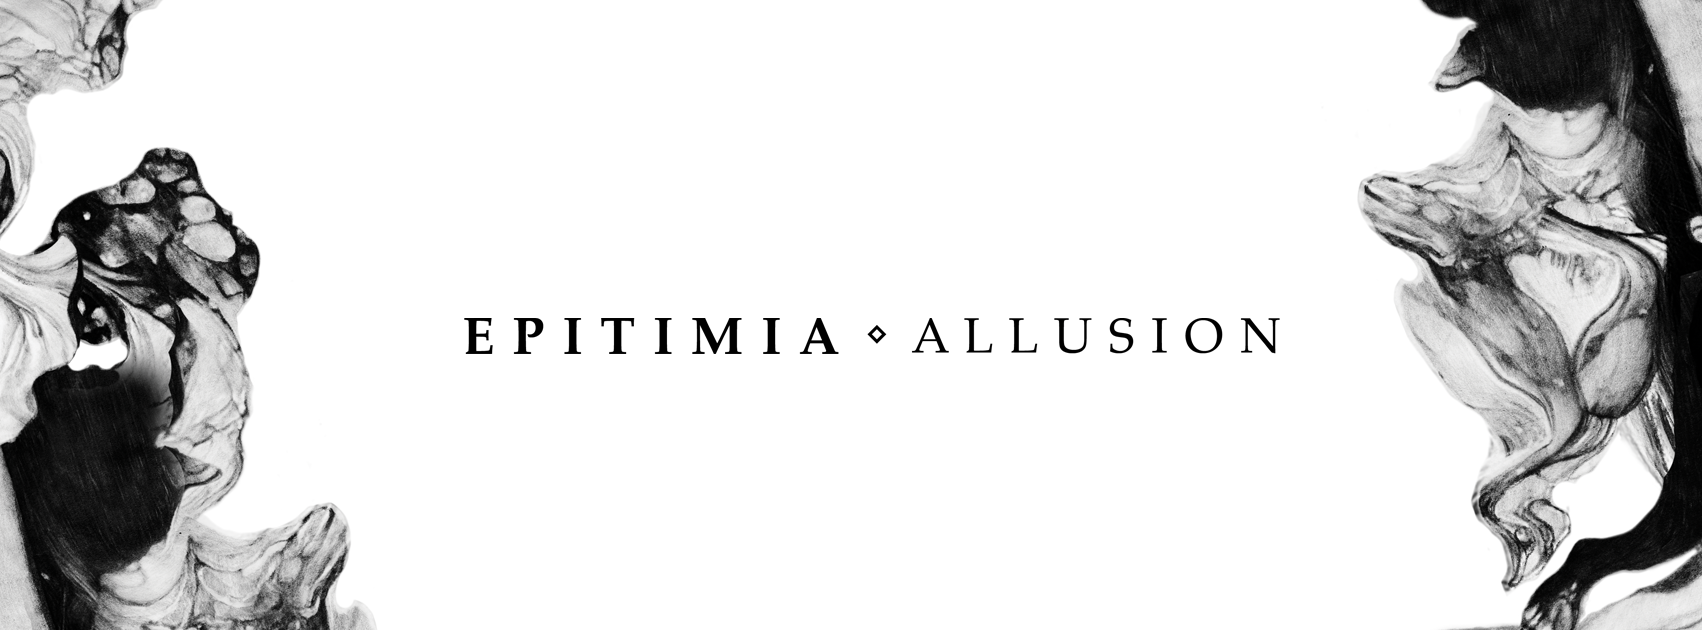 EPITIMIA – “Allusion” (ALBUM REVIEW)